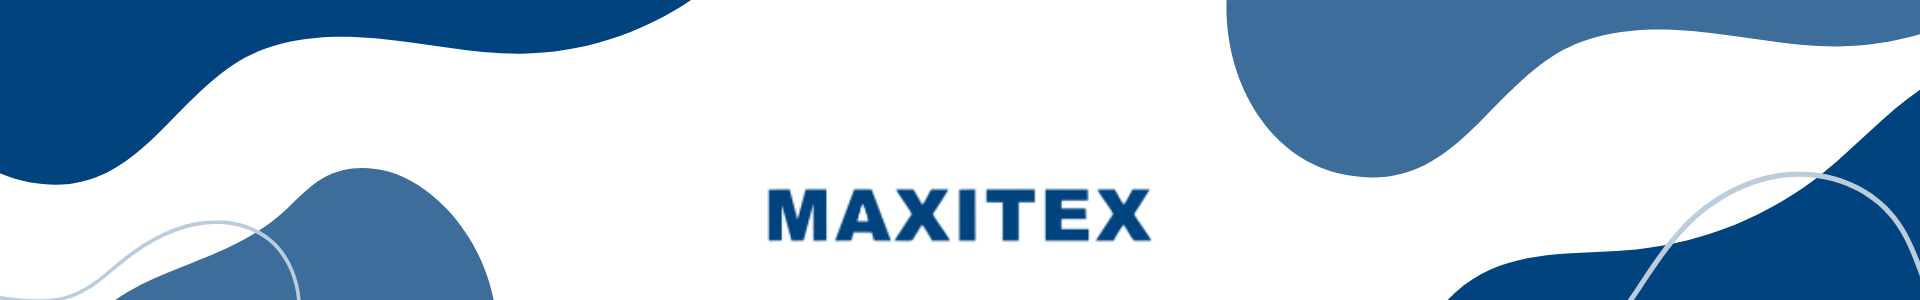 Marca Maxitex